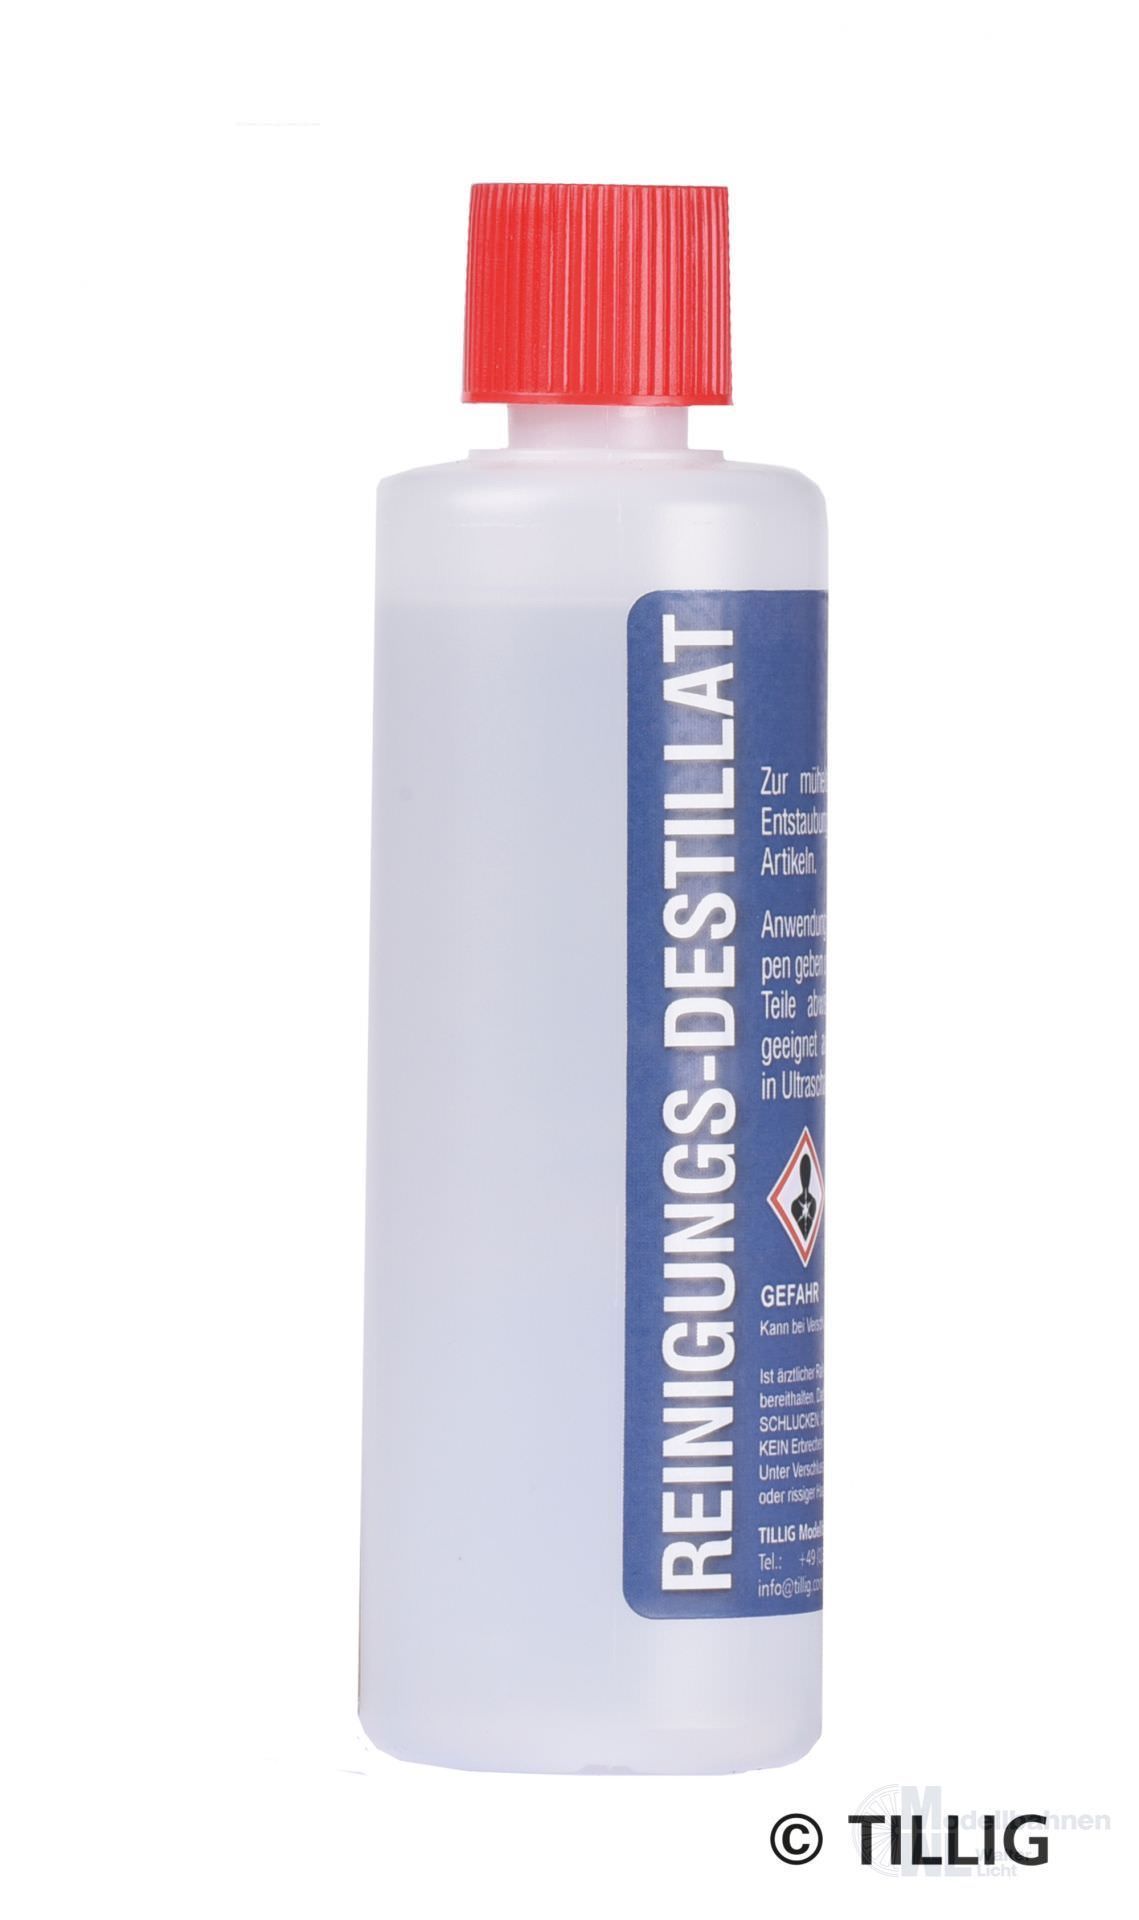 Tillig 08977 - Reinigungsdestilat Flasche 125 ml